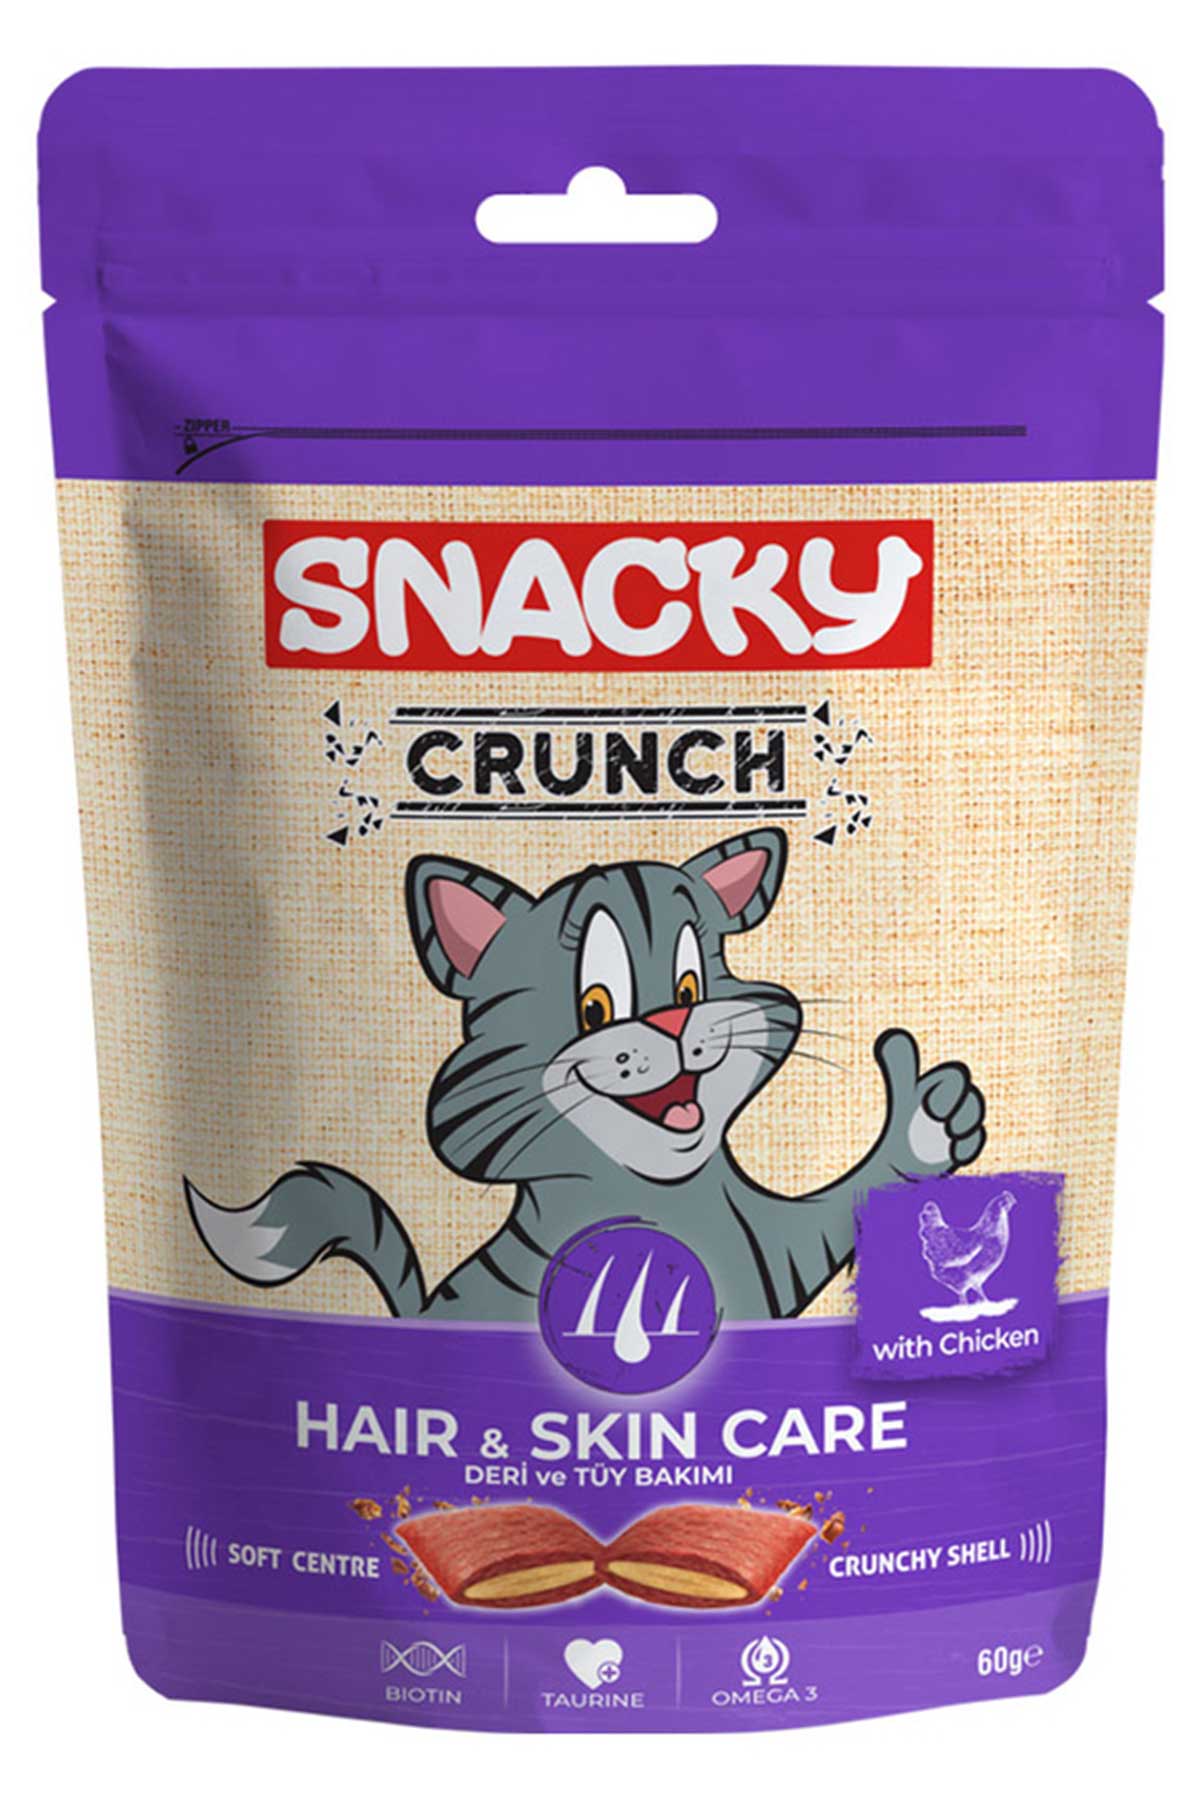 Snacky Crunch Hair & Skin Care Tüy ve Deri Bakımı için Kedi Ödül Maması 60gr